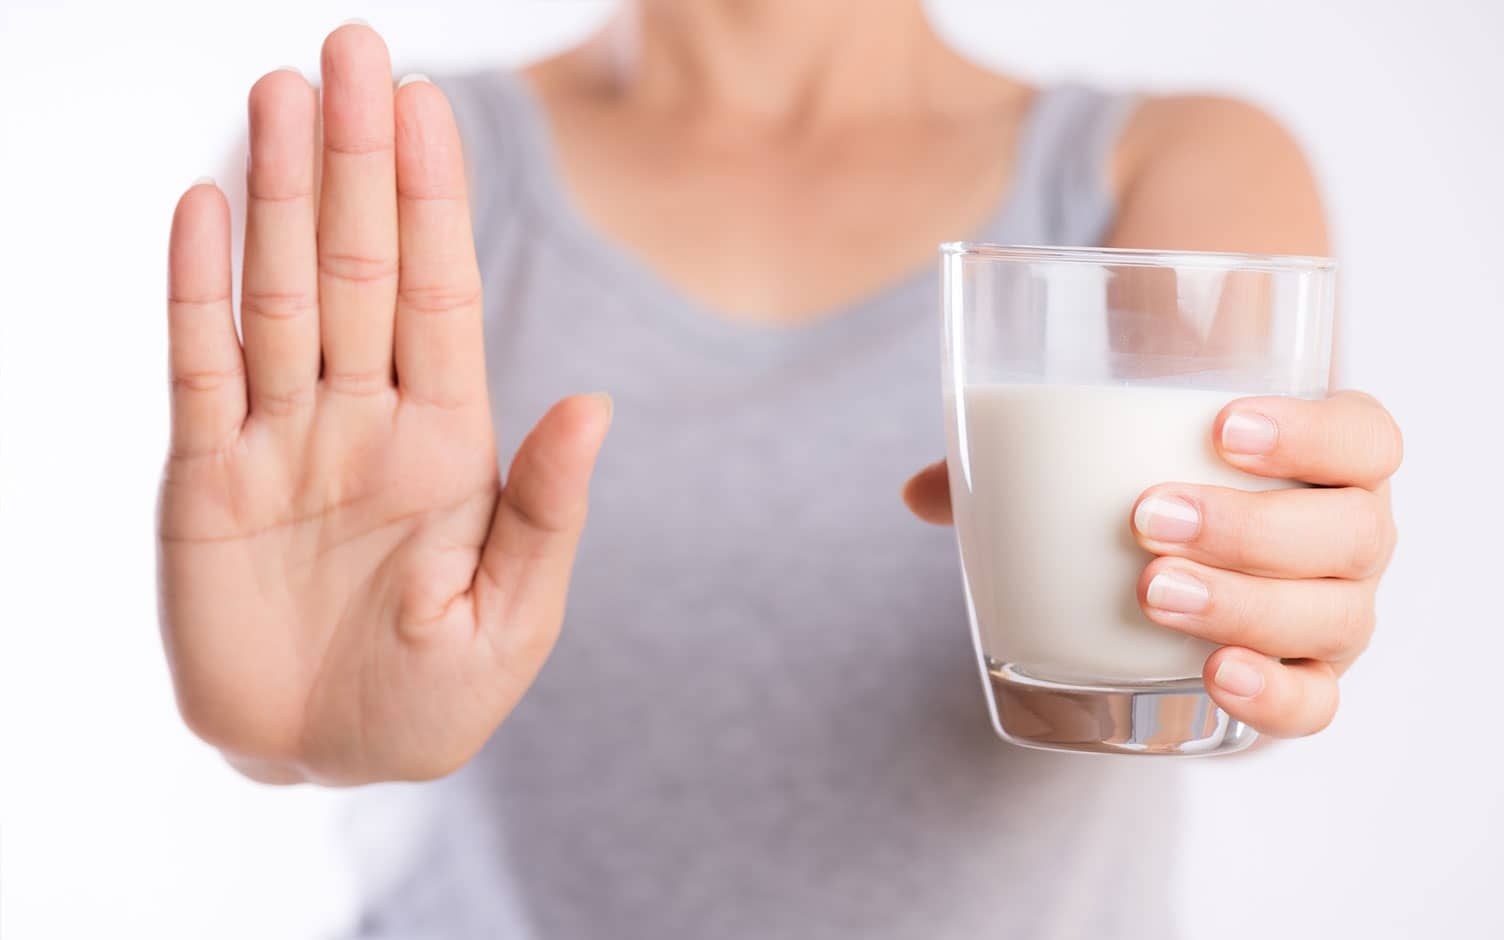 Intolerancia y alergia a la lactosa: advertencias y recomendaciones